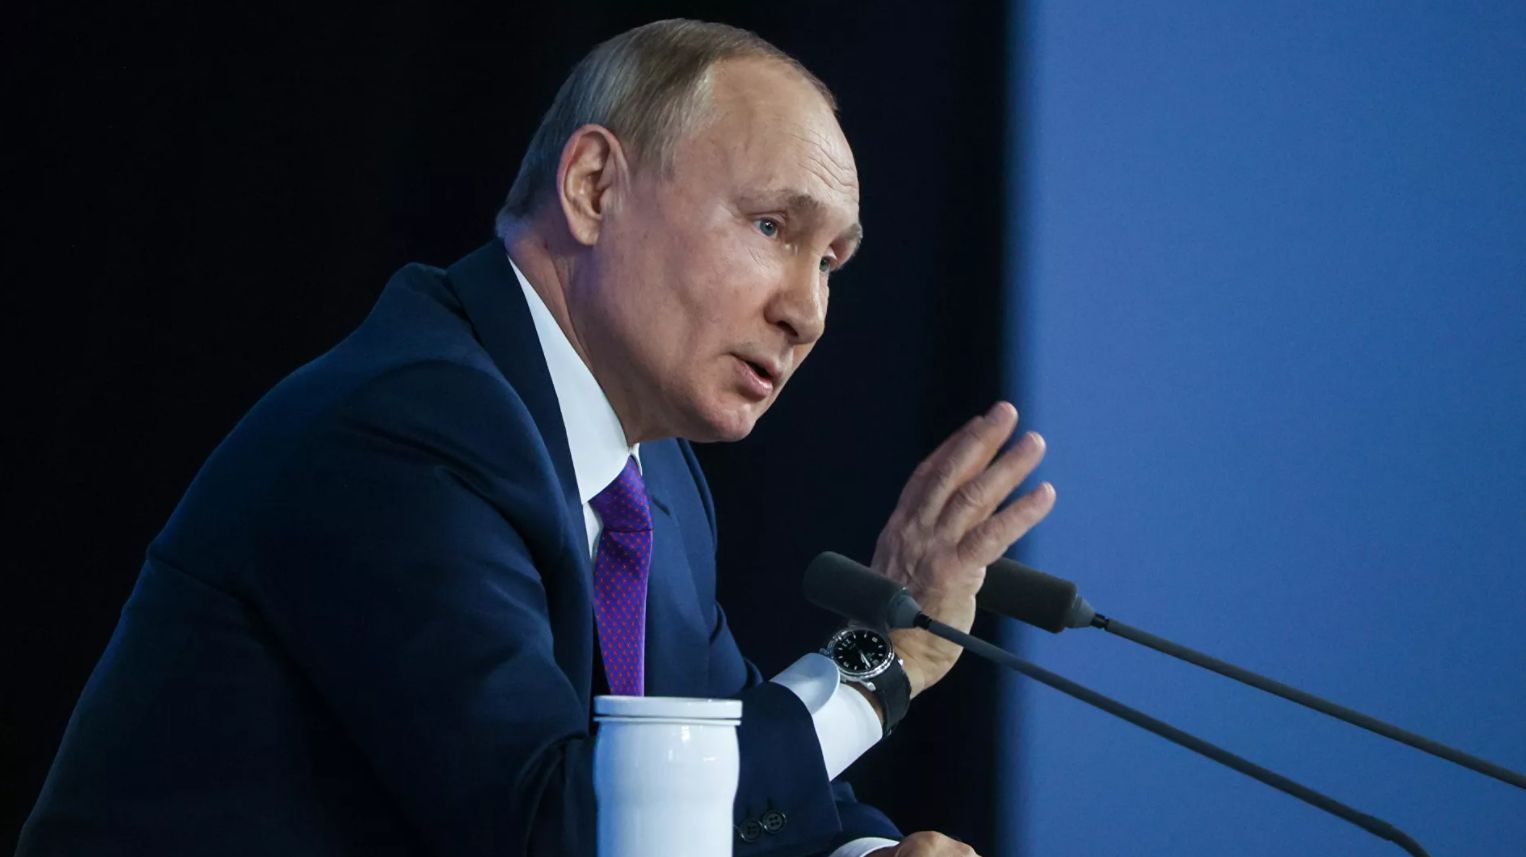 Путин: Россия сделала всевозможное для устранения разногласий по Донбассу мирным путем